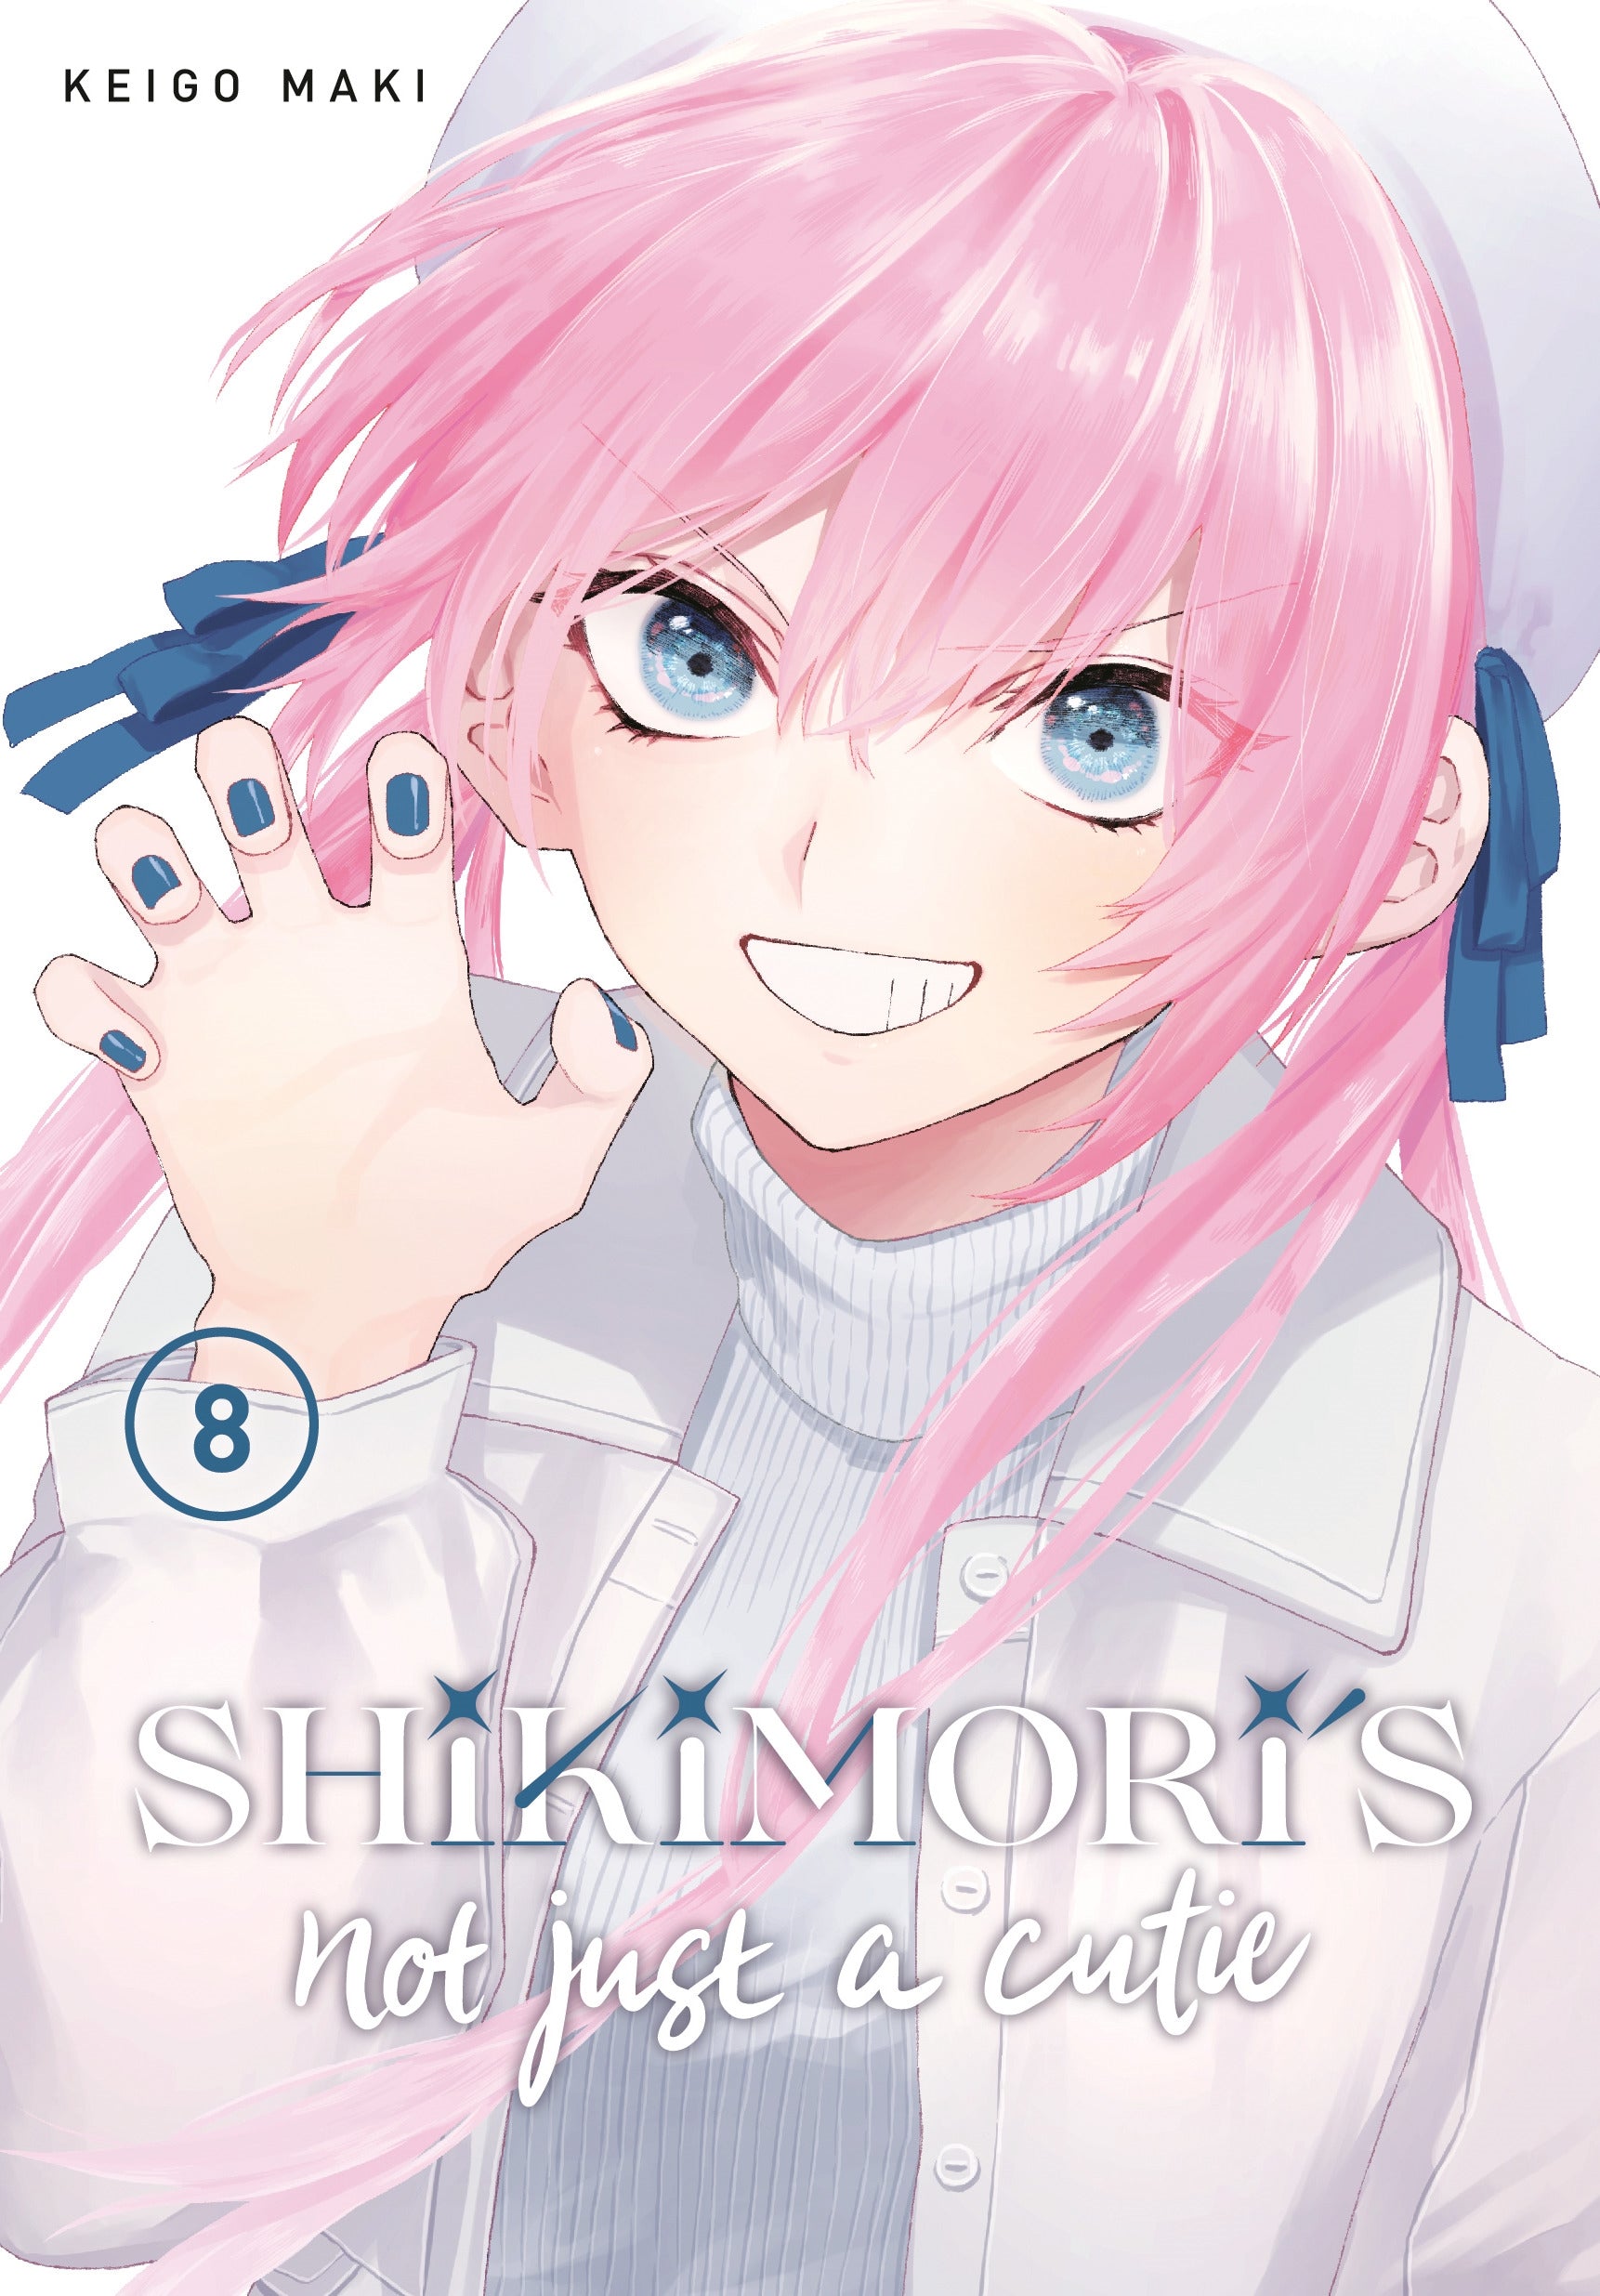 Shikimori's Not Just a Cutie 8 - Manga Warehouse